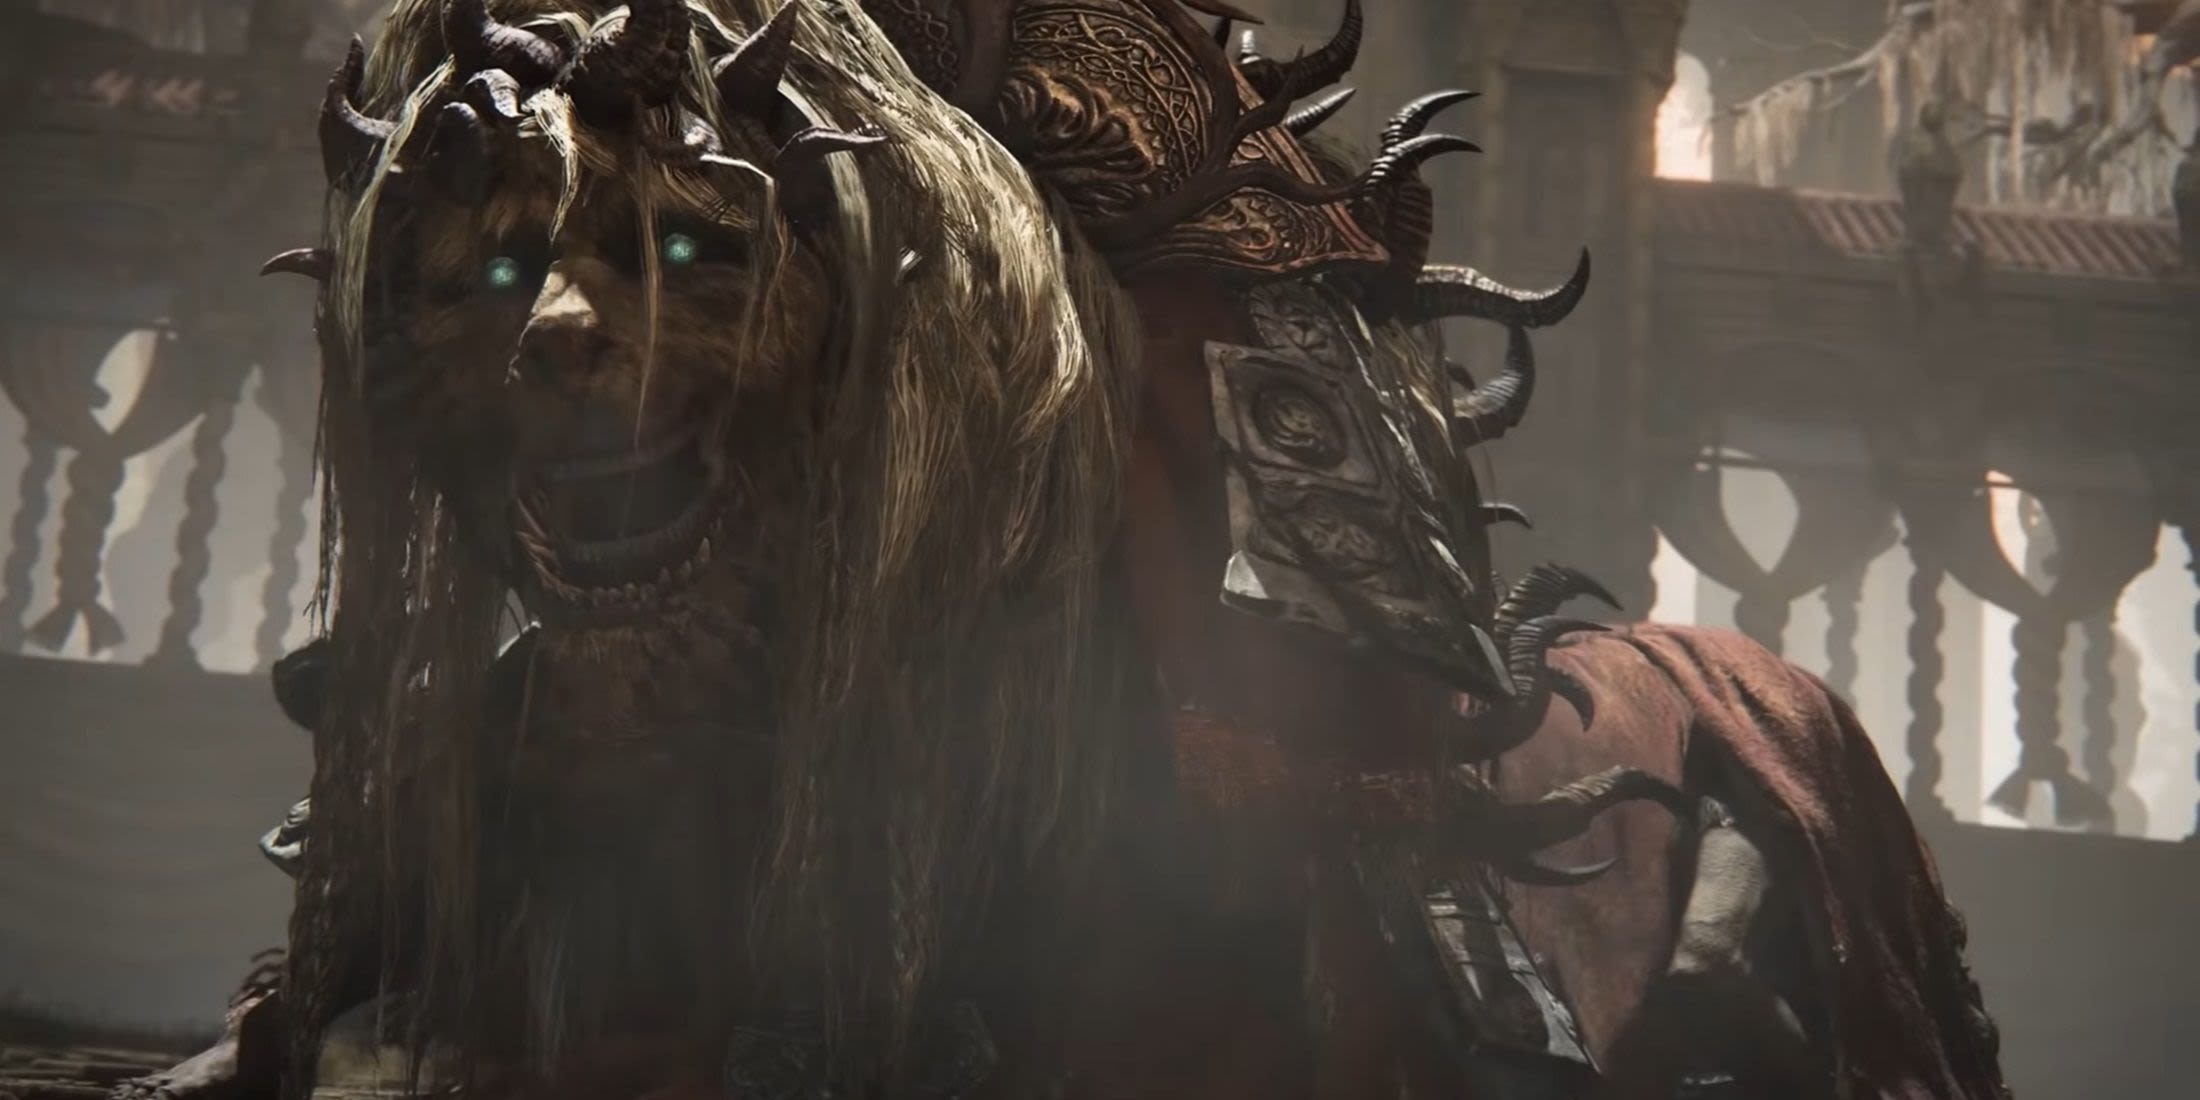 Elden Ring Reveals Terrifying New Boss for Shadow of the Erdtree DLC